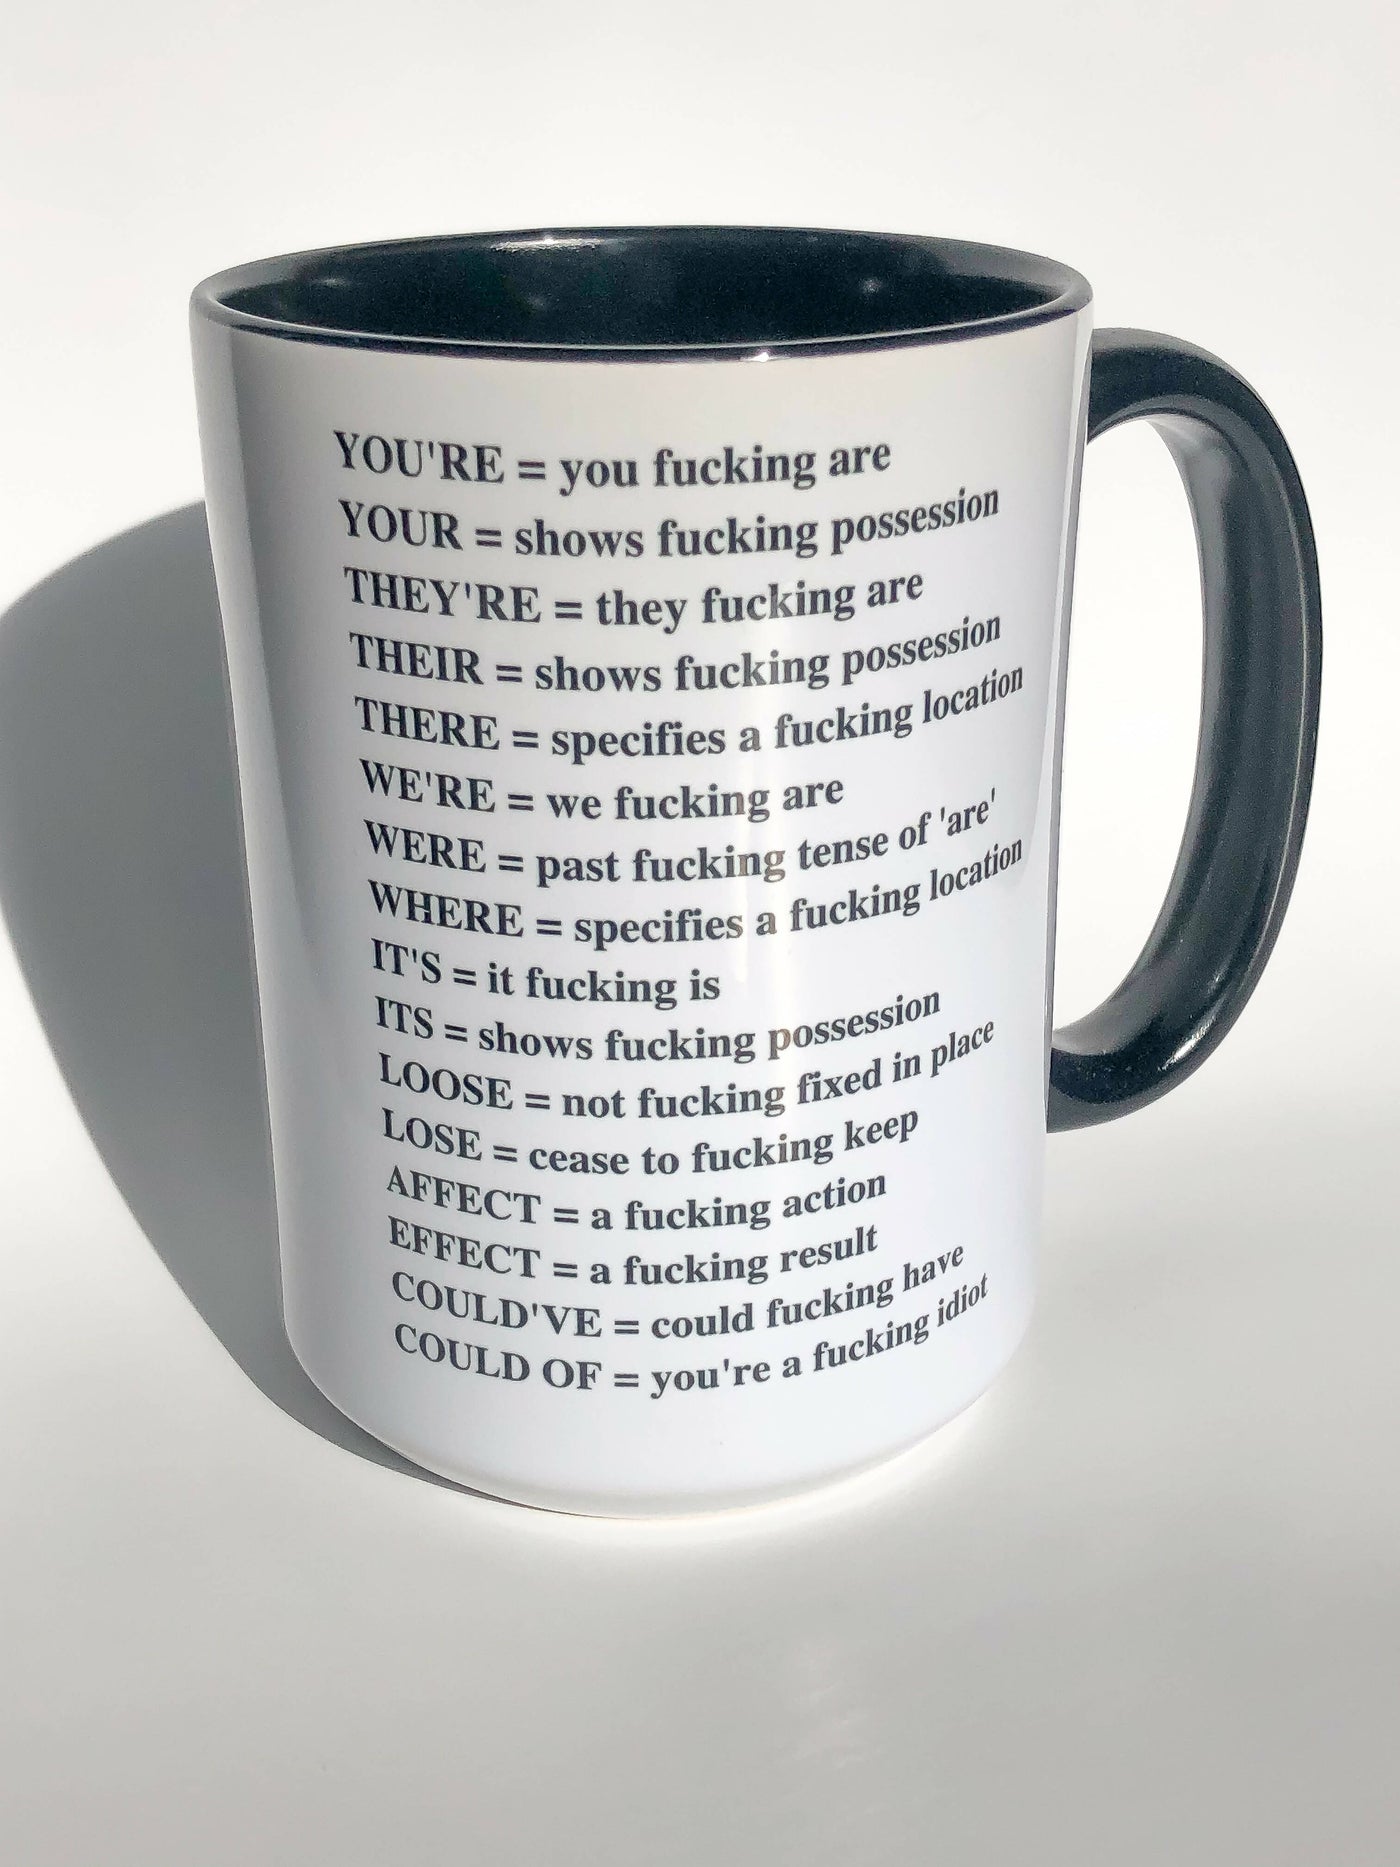 Grammar Mug